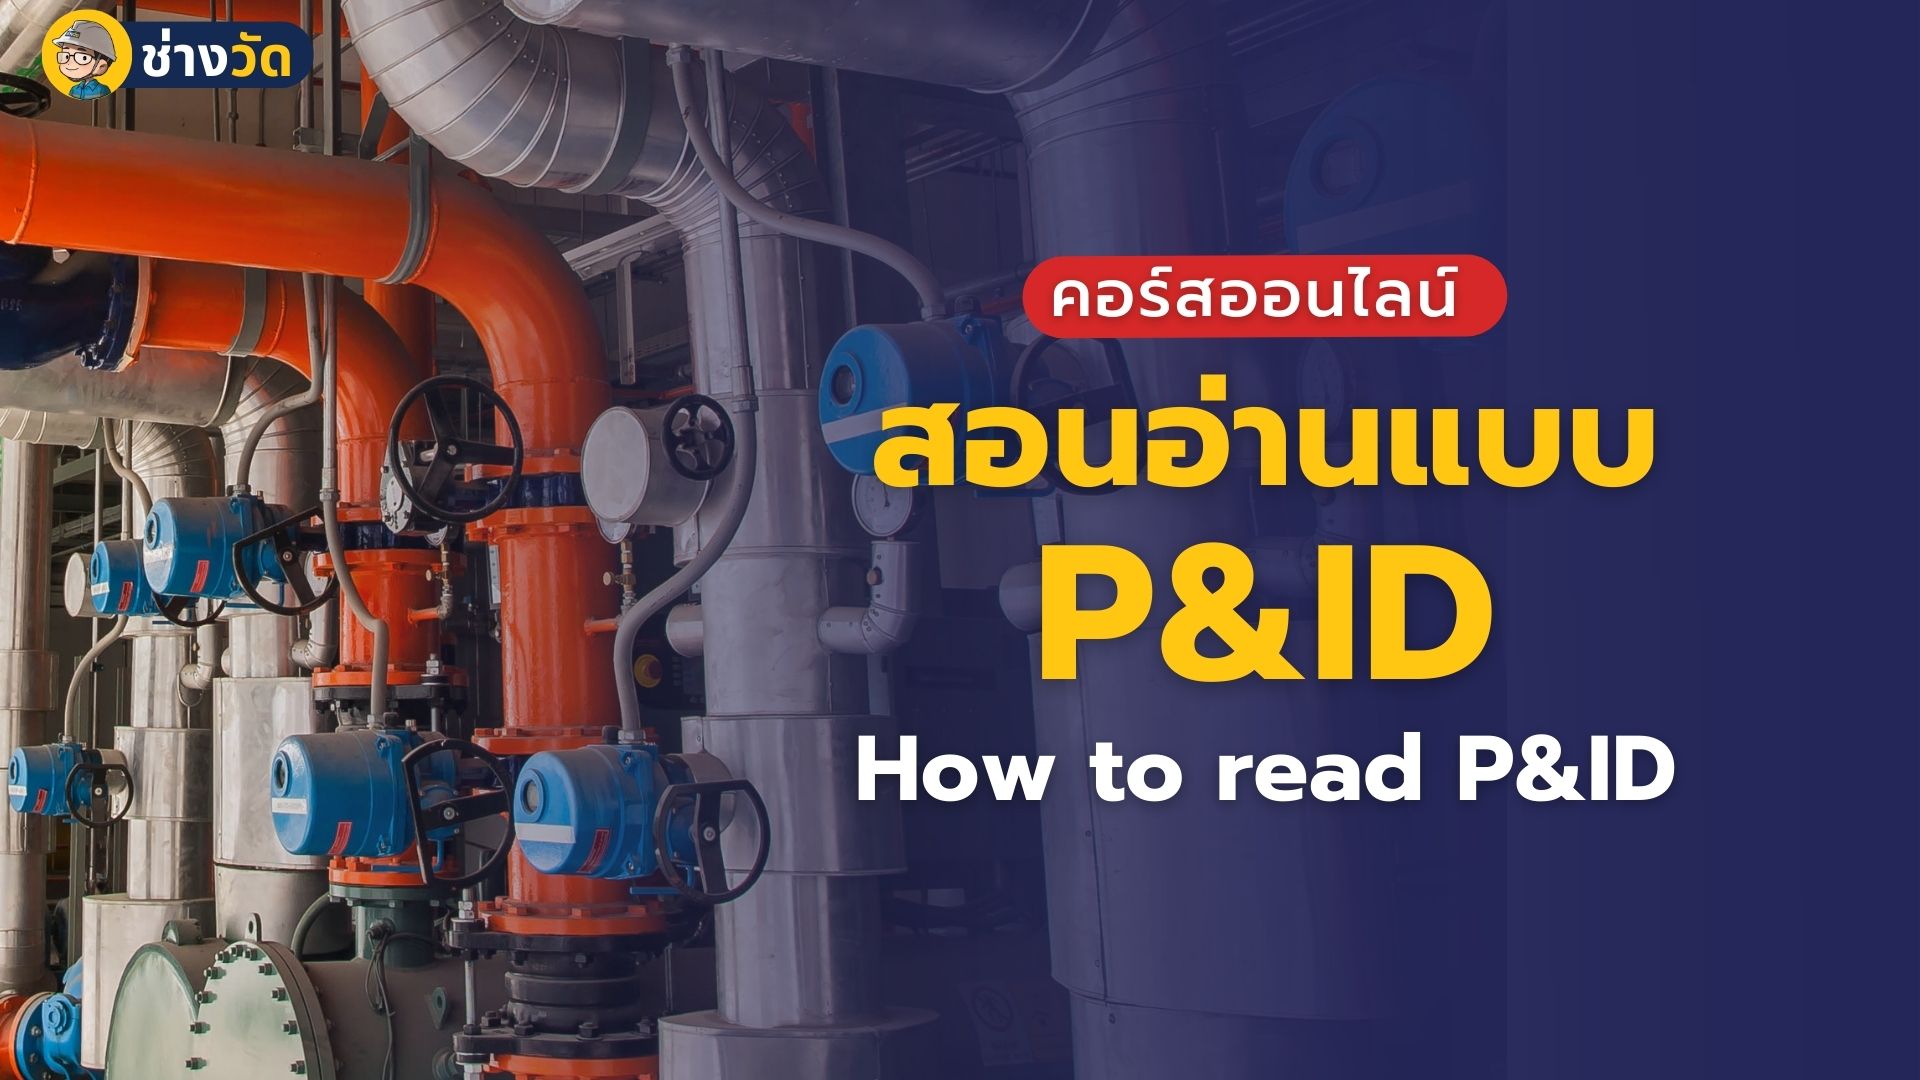 เริ่มต้นการอ่านแบบ P&ID (How to read P&ID)